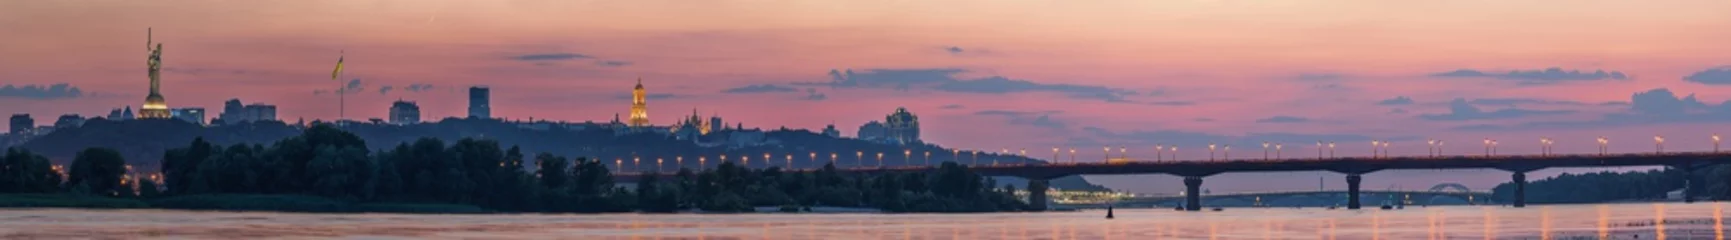 Deurstickers Uitzicht op Kiev Pechersk Lavra, Motherland Monument, Kiev bruggen en de rivier de Dnjepr, na zonsondergang wordt een dunne halve maan aan de oranje hemel gezien. © underwaterstas